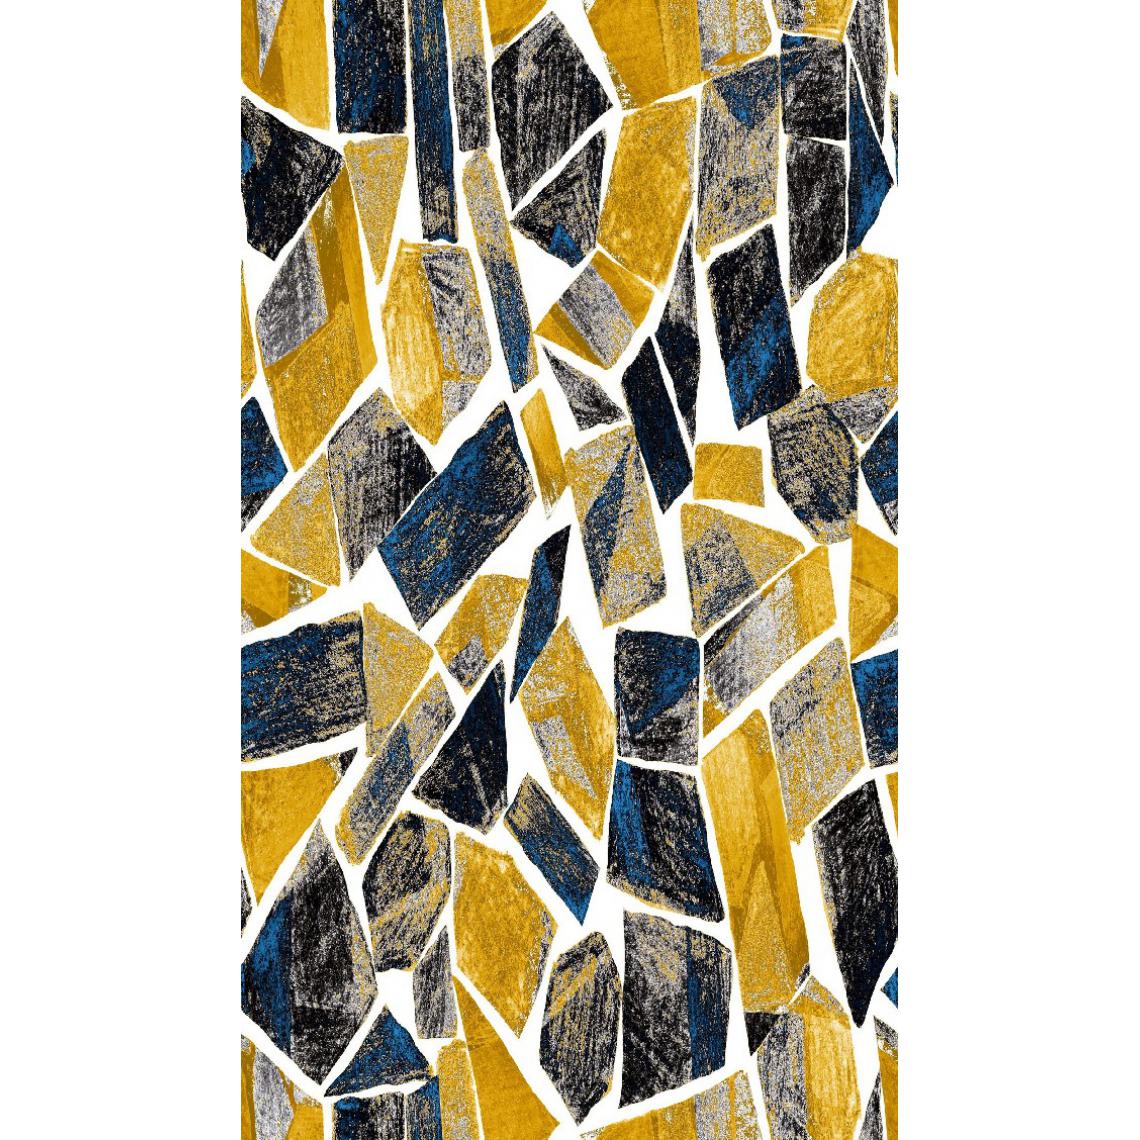 Homemania - HOMEMANIA Tapis Imprimé Collage 1 - Géométrique - Décoration de Maison - Antidérapant - Pour Salon, séjour, chambre à coucher - Multicolore en Polyester, Coton, 140 x 220 cm - Tapis